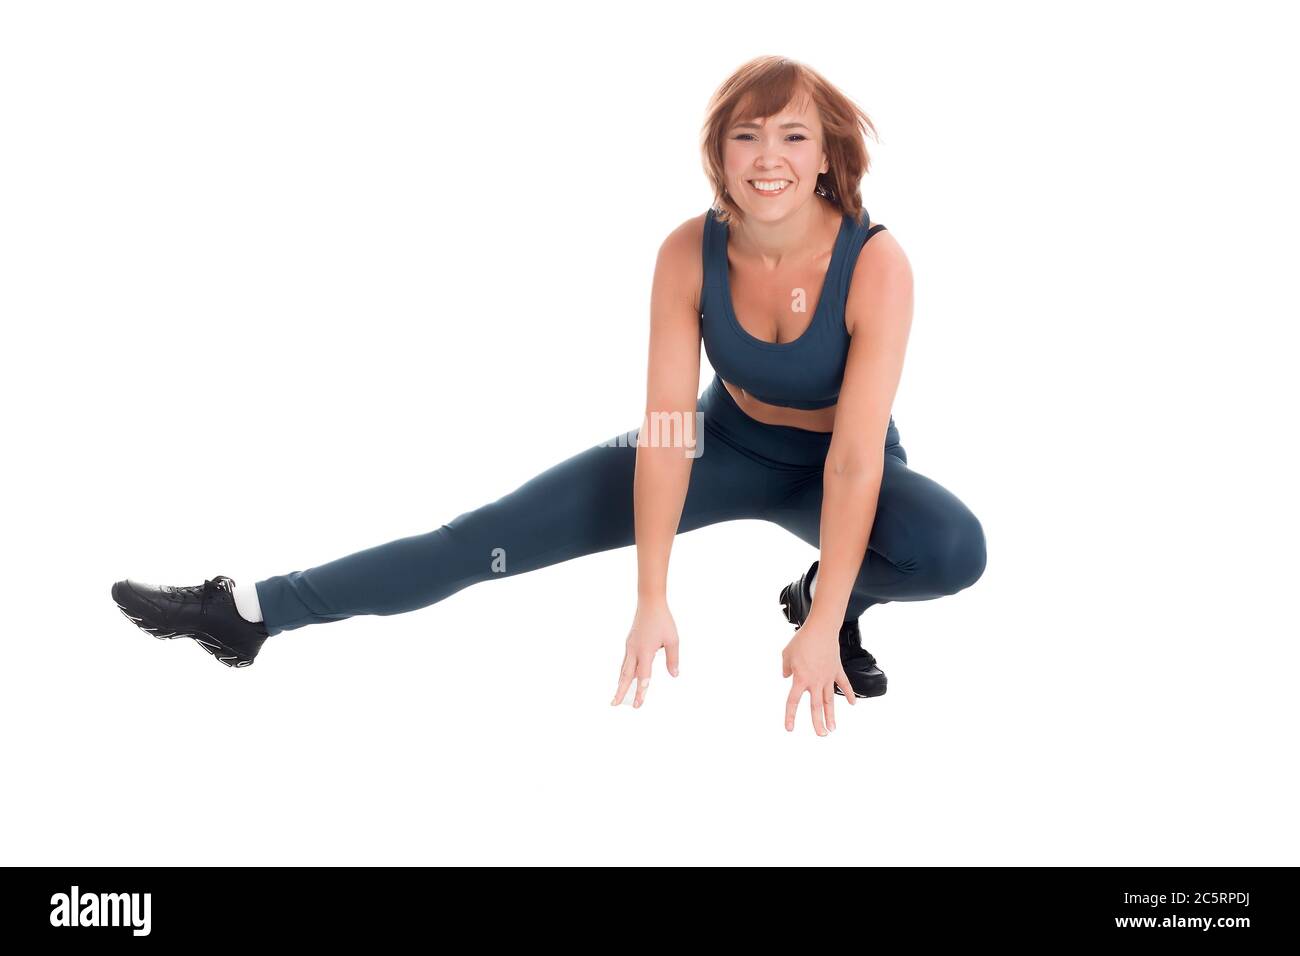 Gesunde Fitness mittleren Alters asiatische Frau in klassischen blauen Sportbekleidung, Kniebeugen auf einem Bein auf einem weißen Hintergrund von Isolate Stockfoto